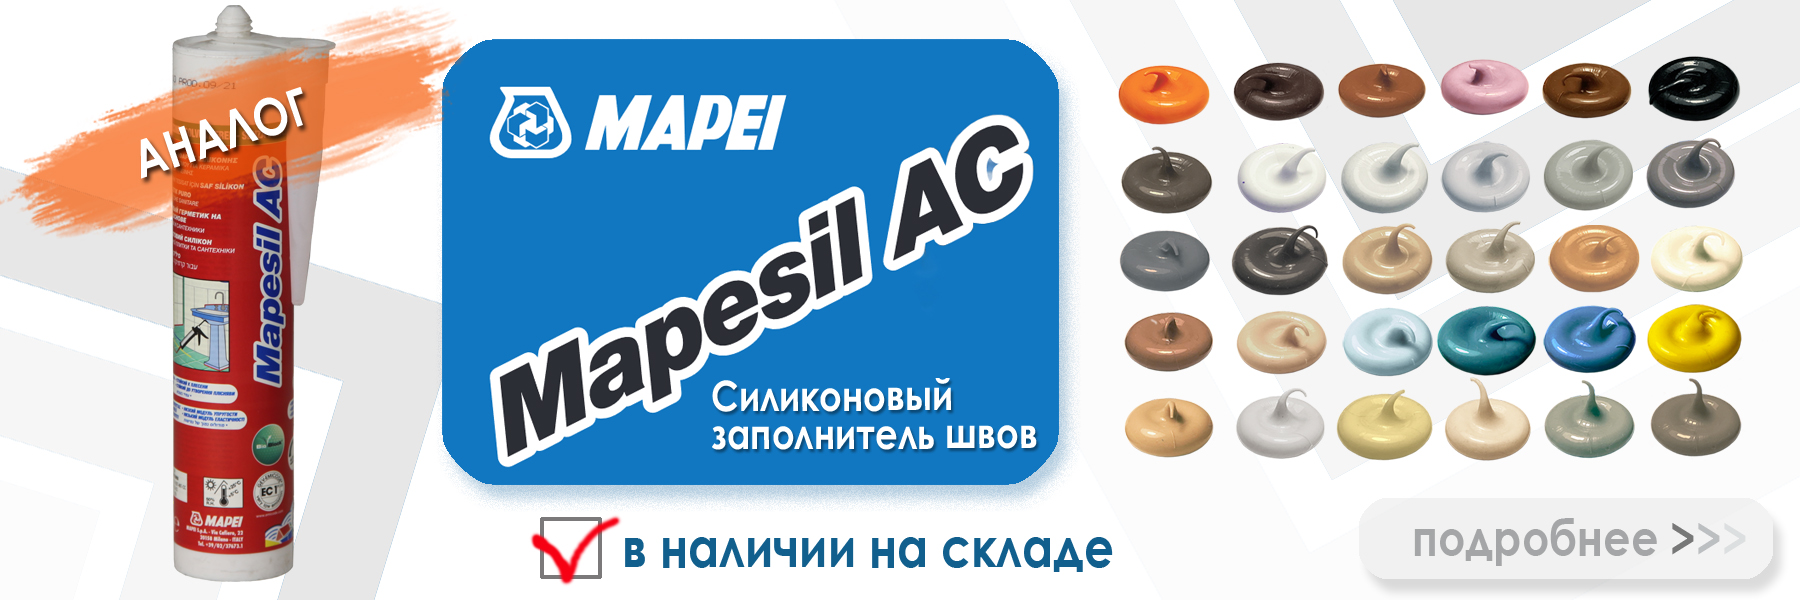 аналог силиконовой затирки Ceresit CS 25 13 антрацит  - Mapei Mapesil AC